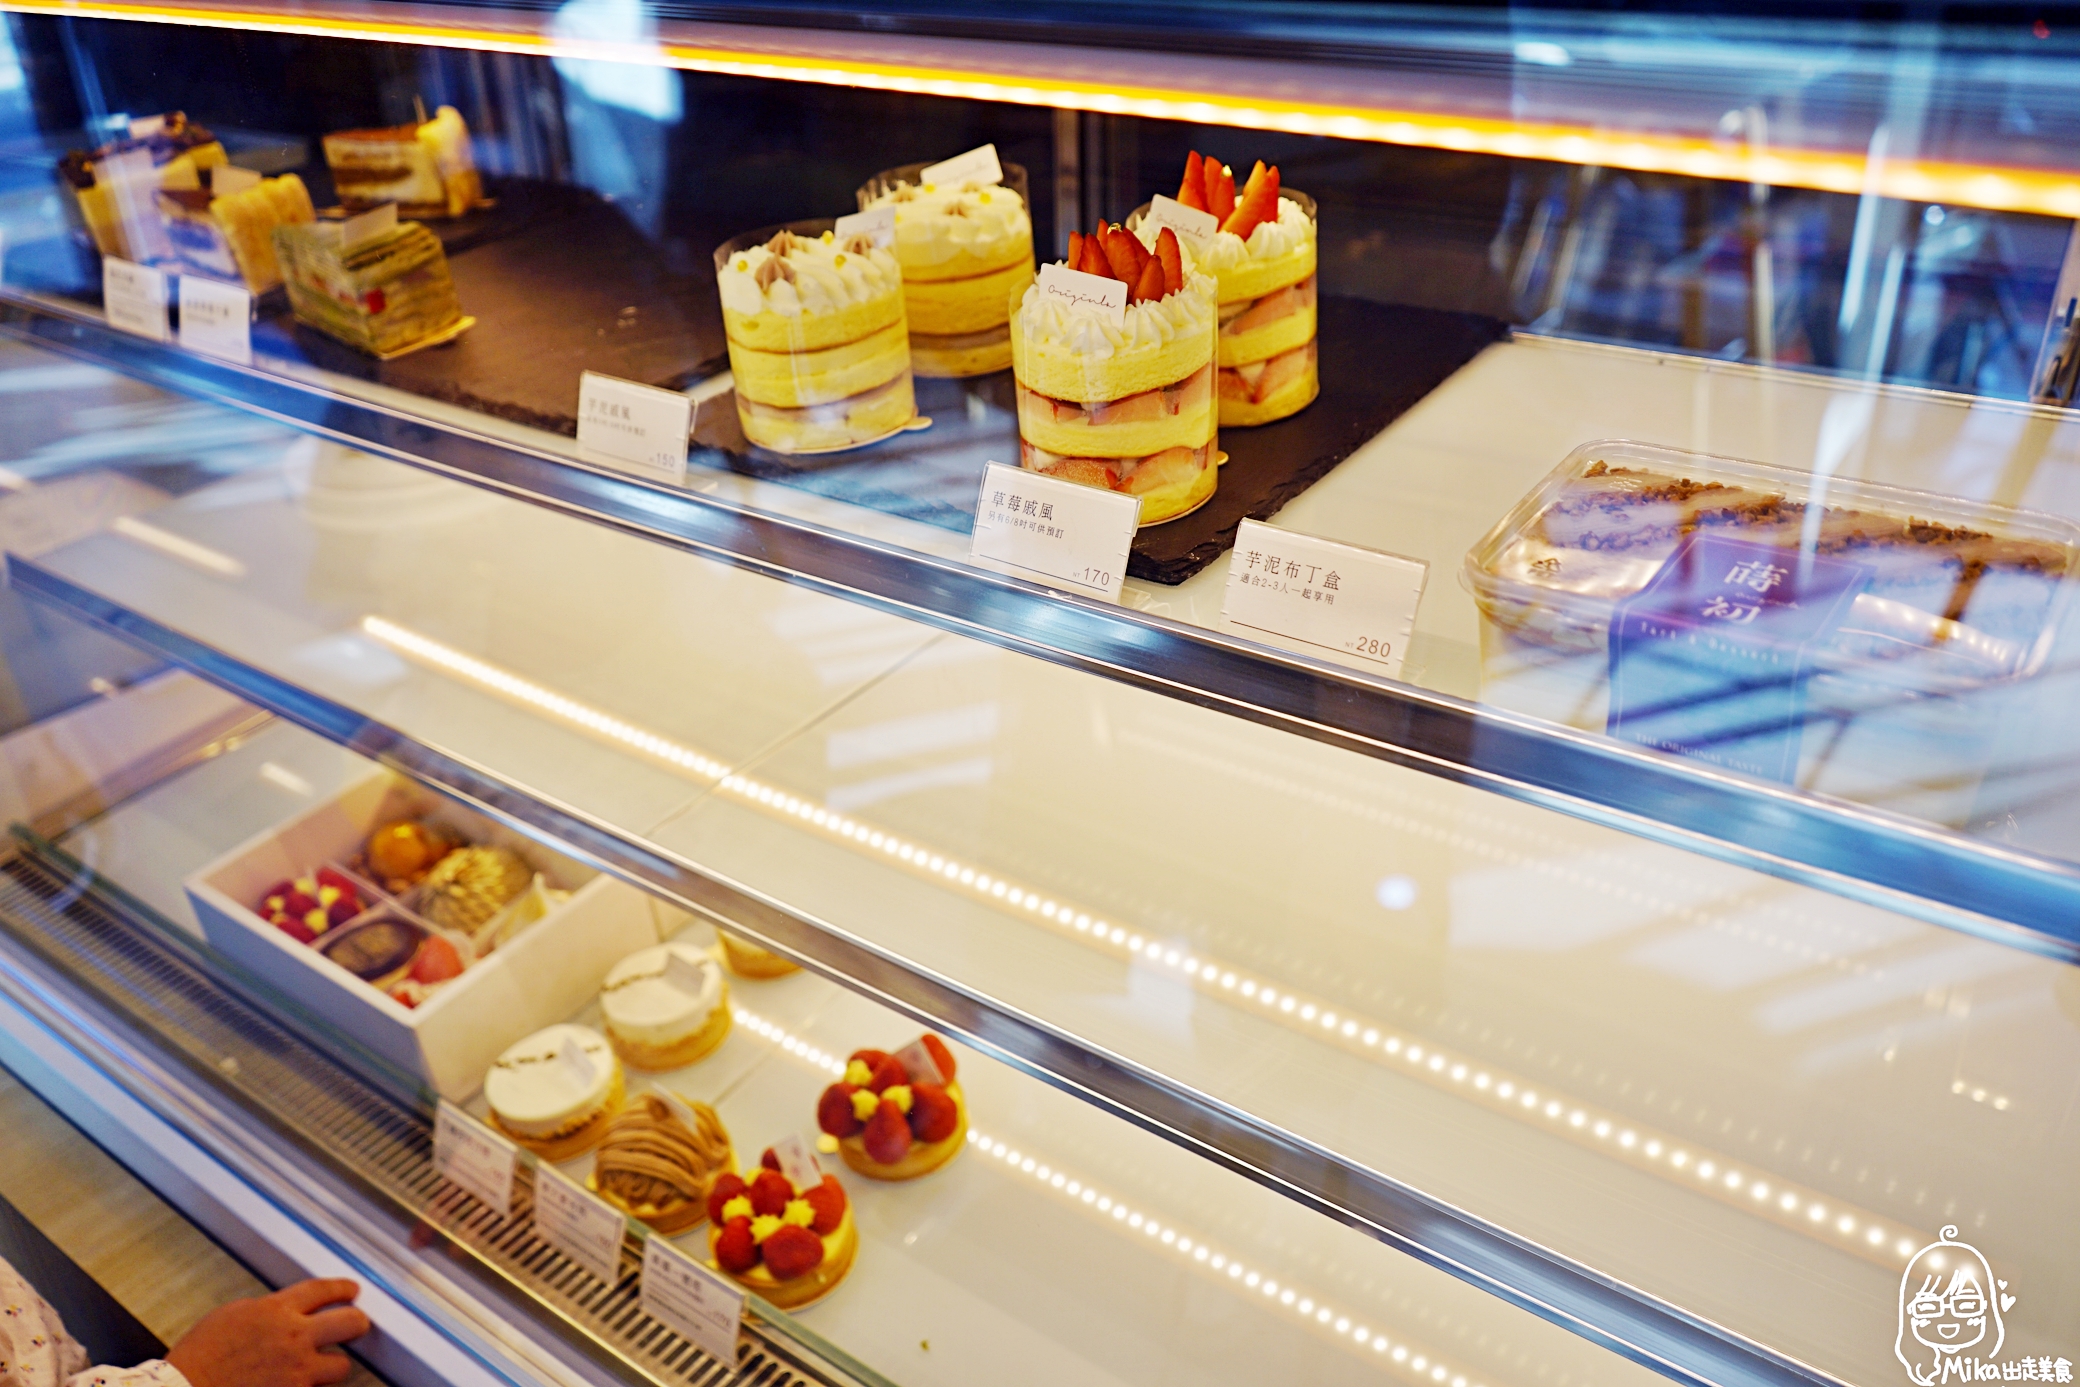 『台中。西區』 蒔初甜點 Originl’a Tart & Dessert 五權旗艦店｜生活不難、只是需要適度的為自己加一點甜。寬敞明亮純白空間，質感推薦戚風蛋糕、慕斯、千層。